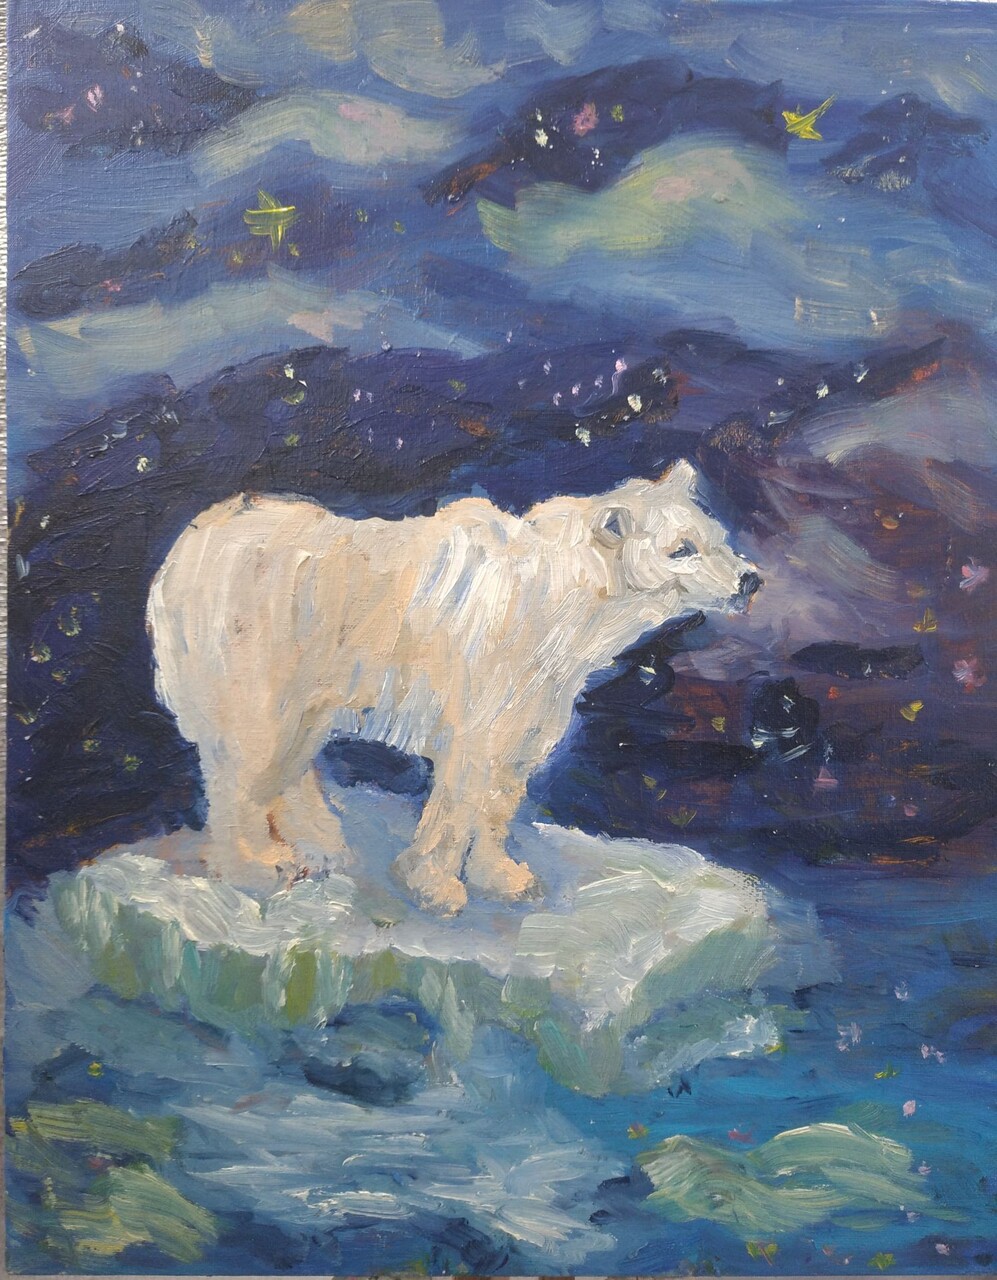 Белая медведица